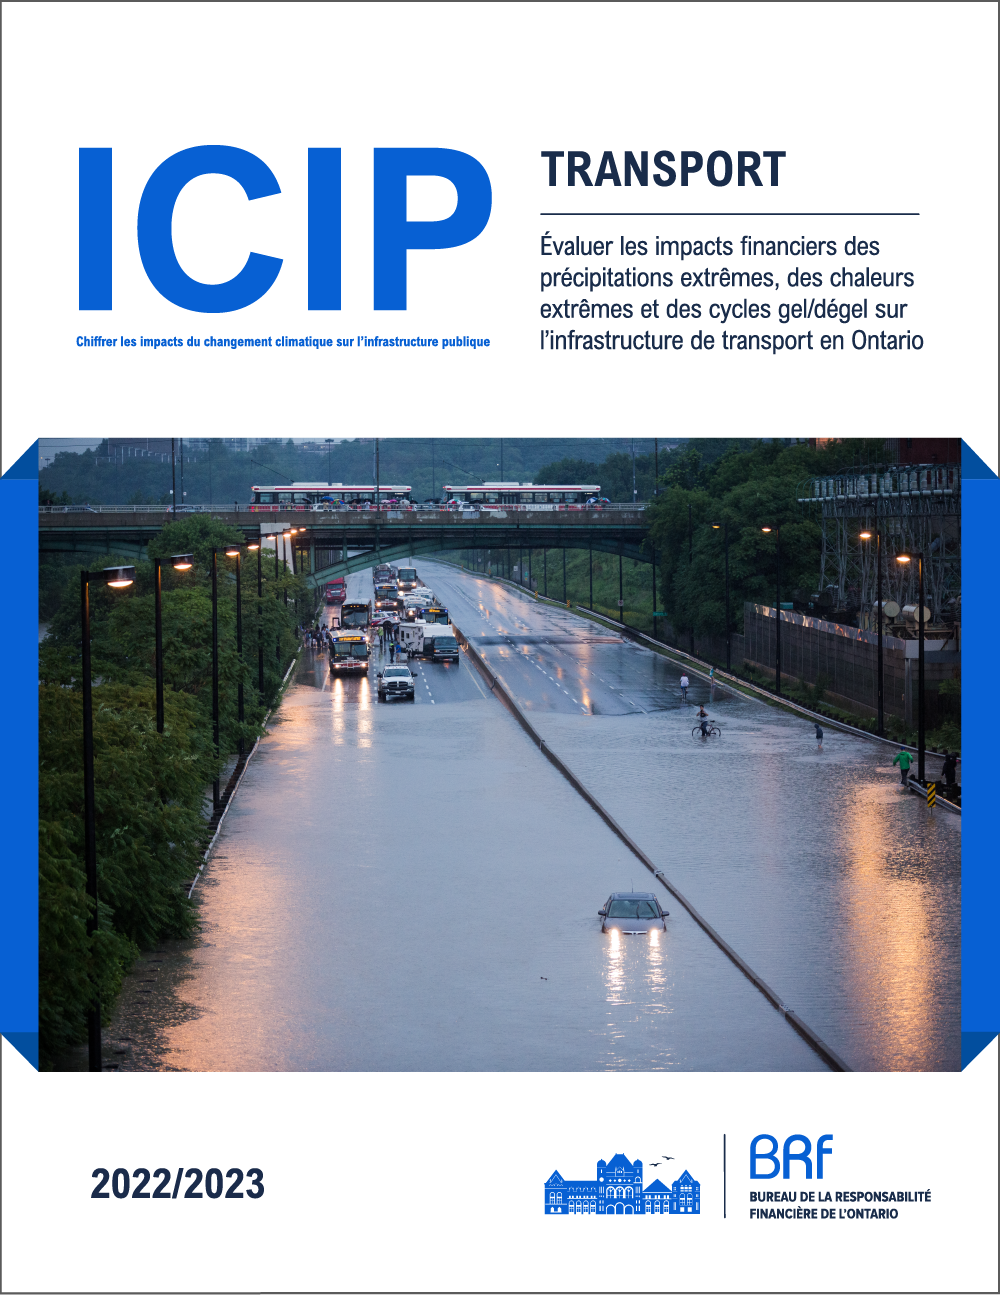 ICIP : Transport - Évaluer les impacts financiers des précipitations extrêmes, des chaleurs extrêmes et des cycles gel/dégel sur l'infrastructure de transport en Ontario